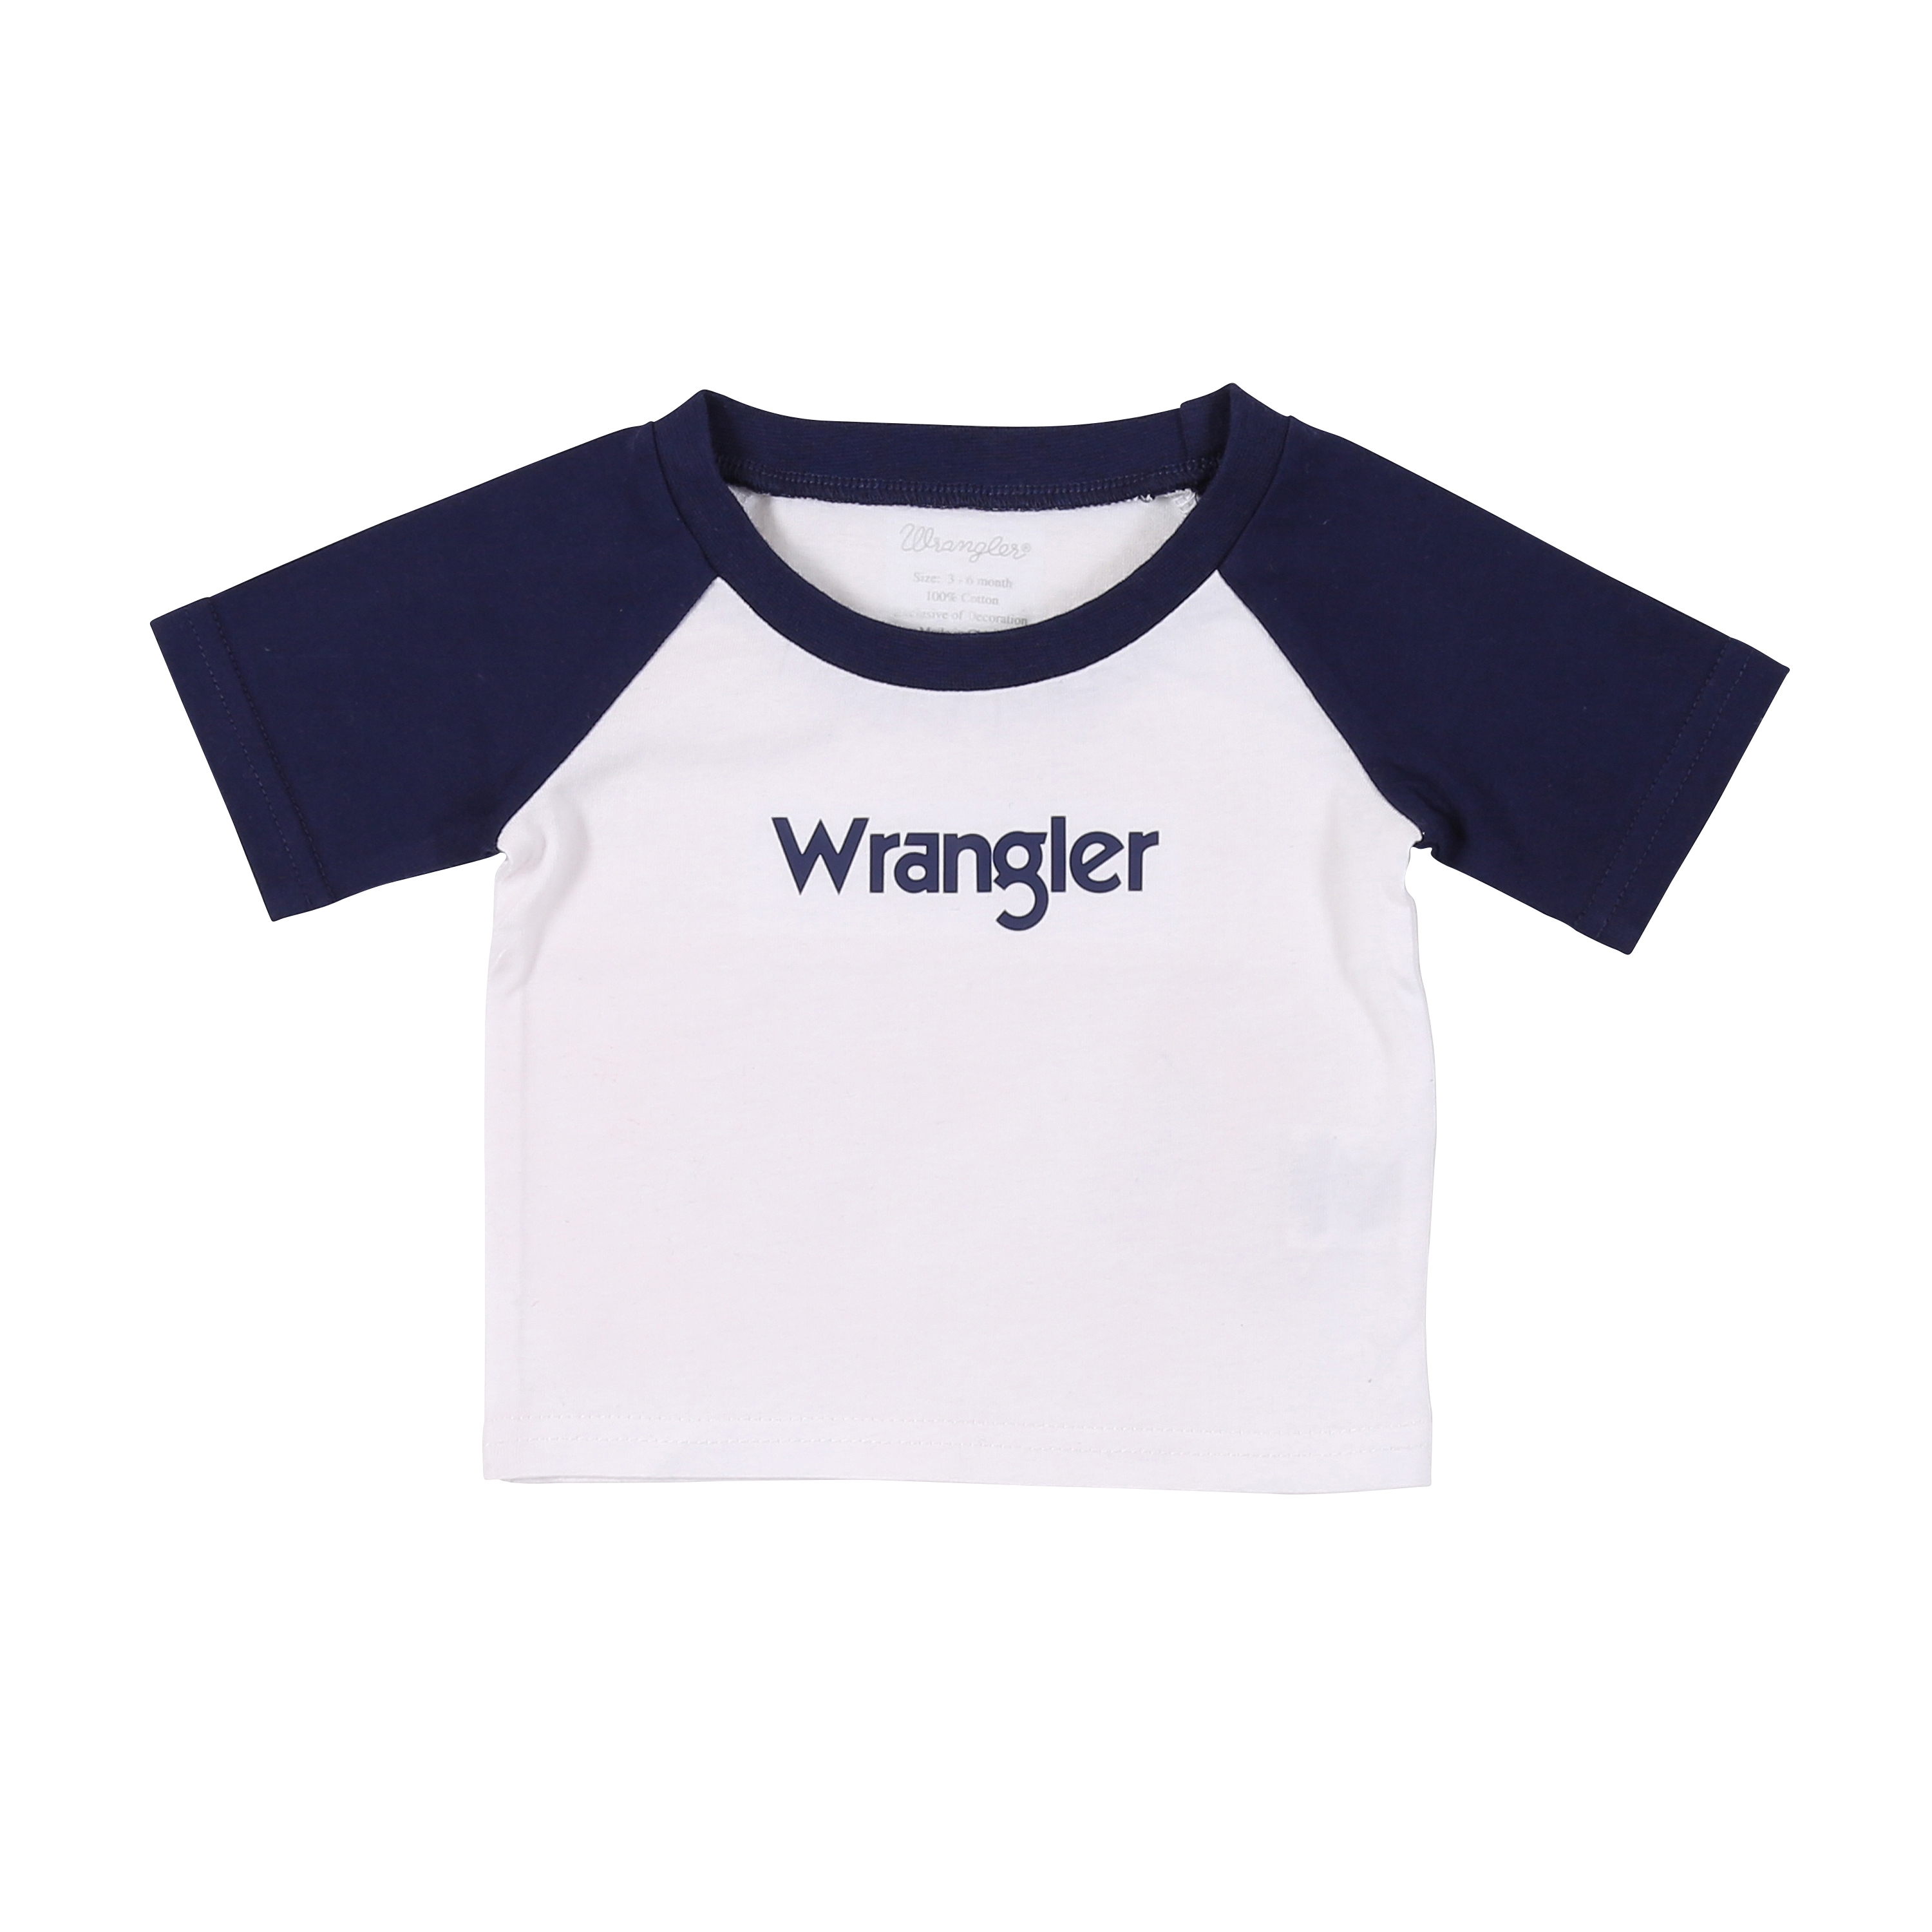 wrangler baby boy clothes